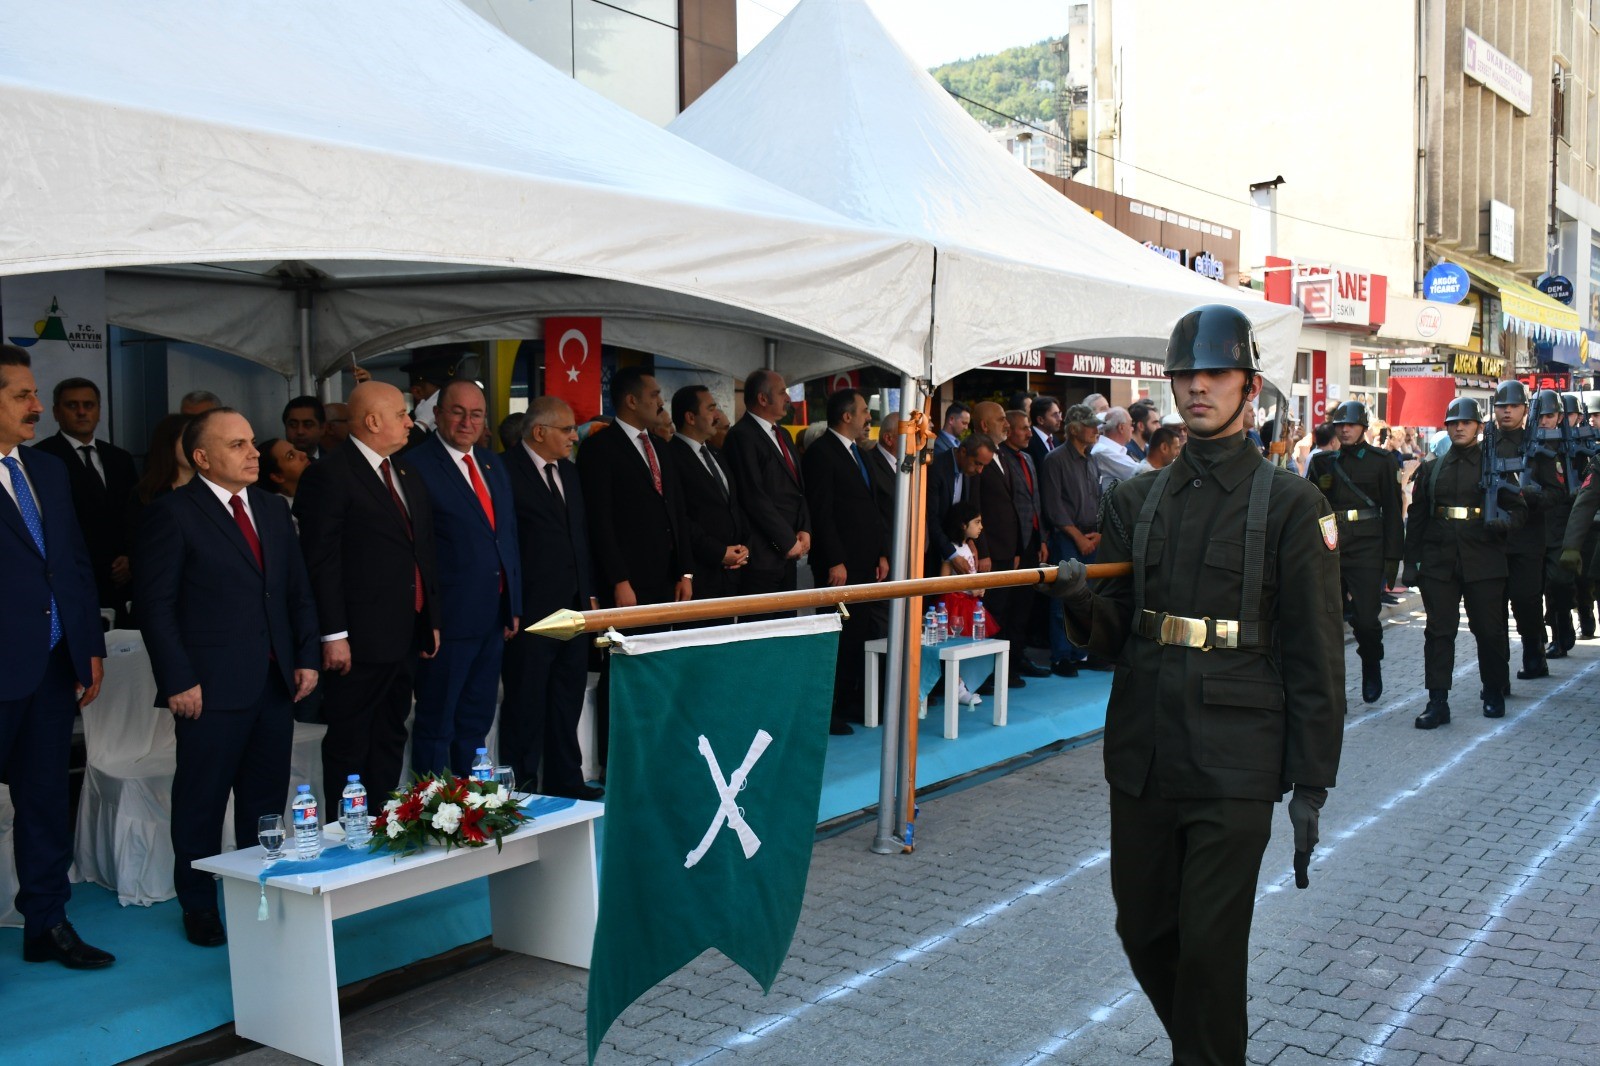 Artvin Valiliği önünde gerçekleştirilen tören, Vali Cengiz Ünsal, Garnizon Komutanı Piyade Albay Ali Osman Tokat, Belediye Başkanı Demirhan Elçin’in Atatürk Anıtı’na çelenk sunumuyla başladı.
